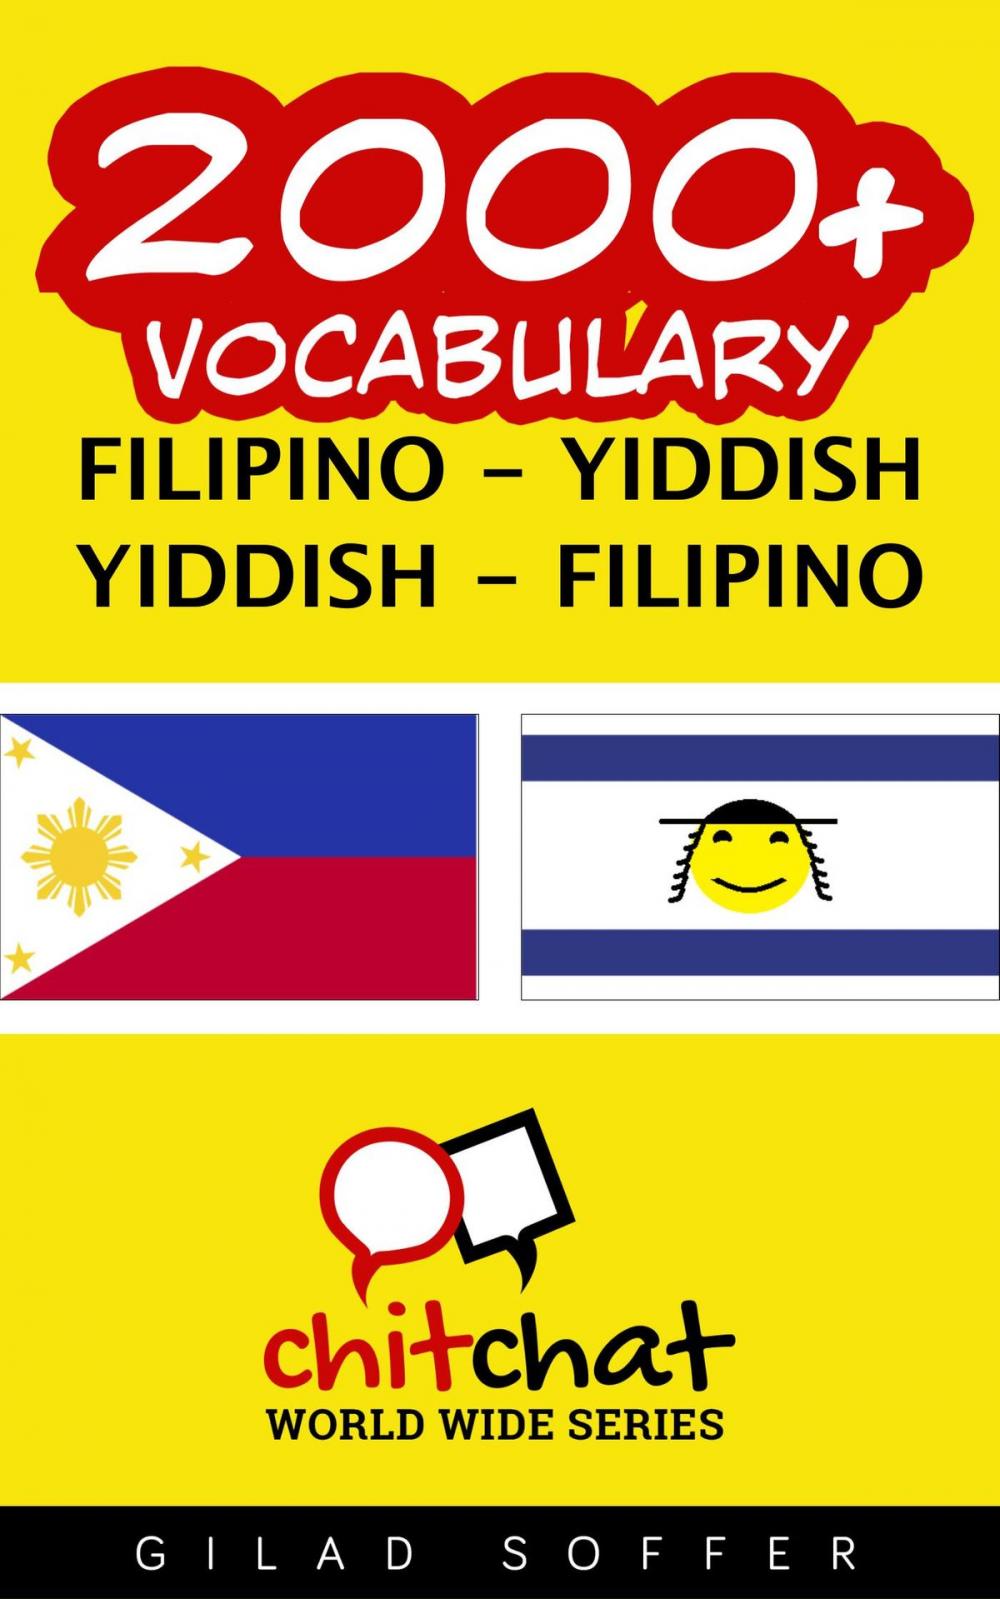 Big bigCover of 2000+ Vocabulary Filipino - Yiddish